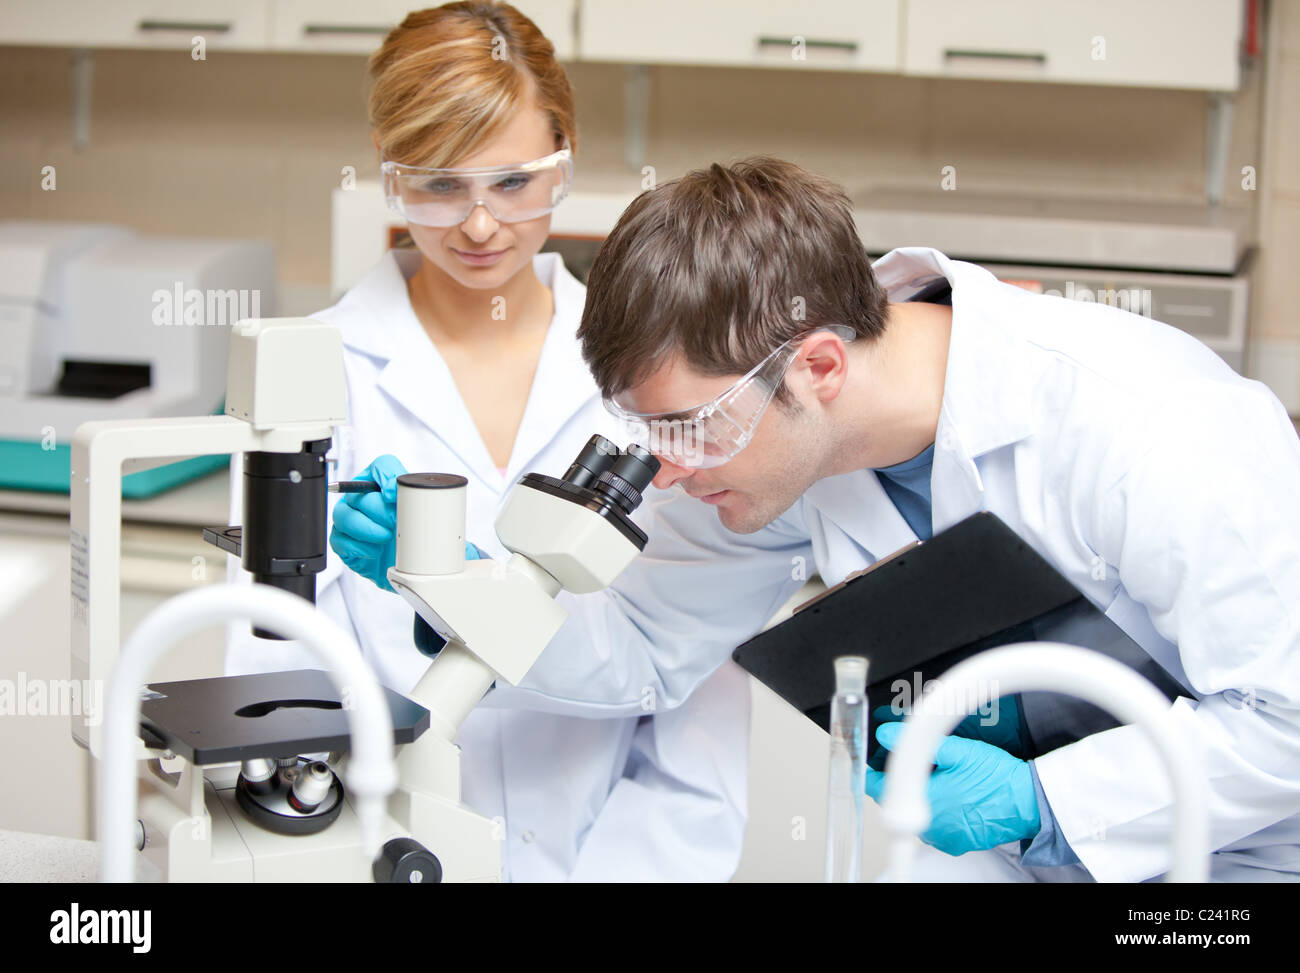 Deux scientifiques observant quelque chose avec un microscope Banque D'Images